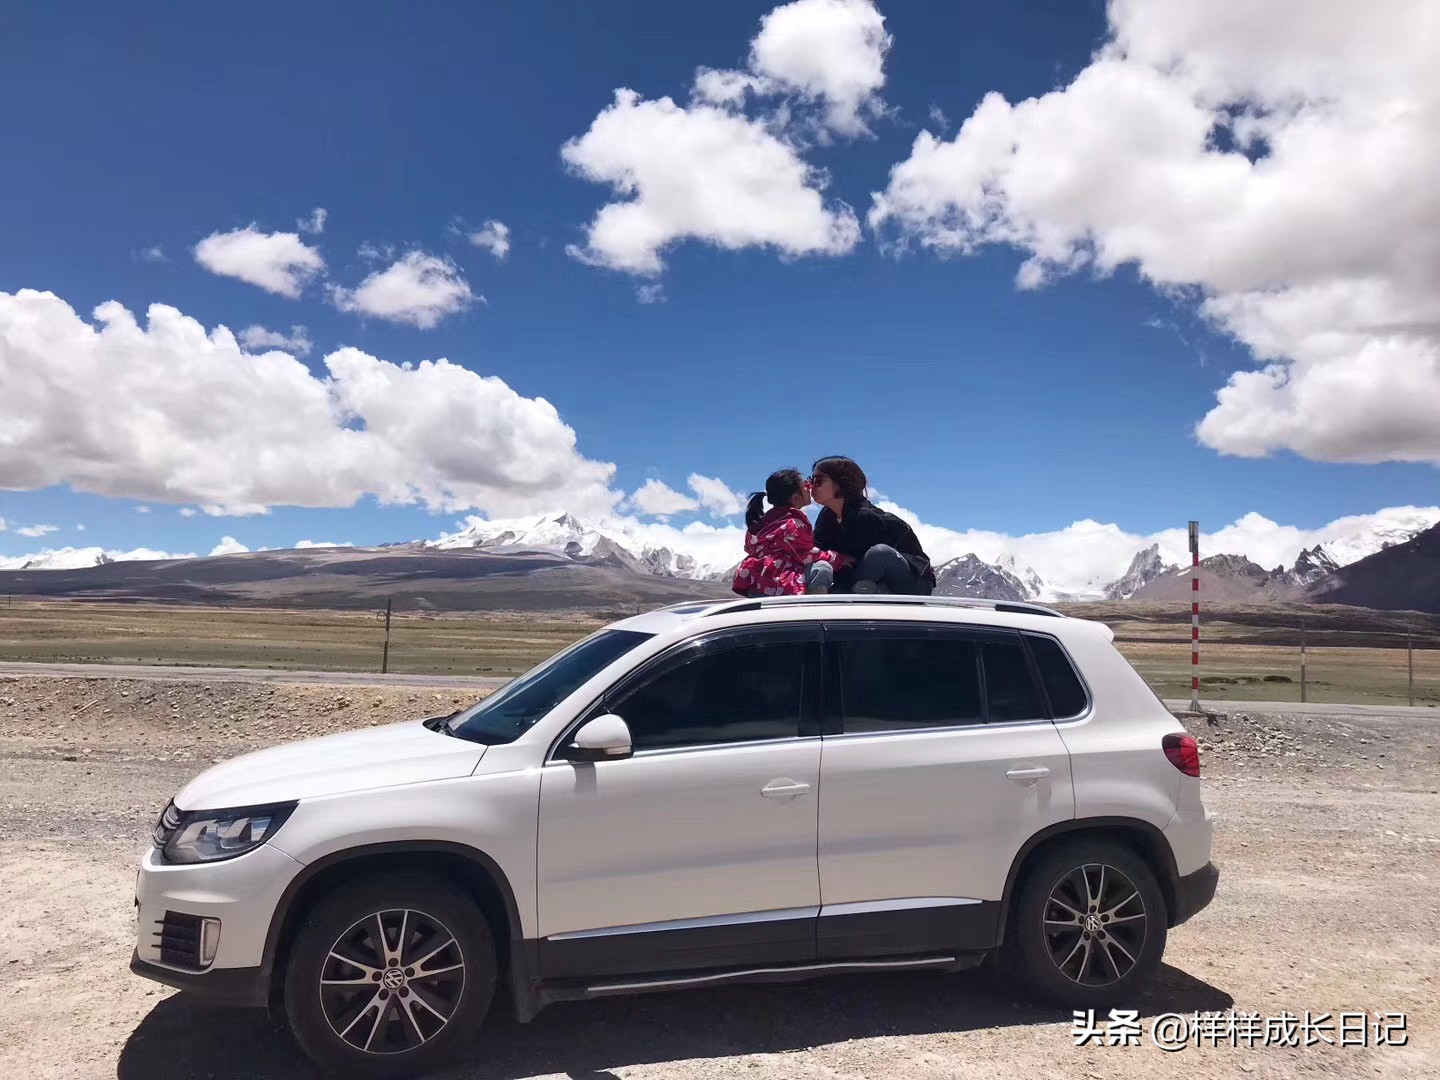 自驾去西藏，路上车子启动不了，电瓶搭个电收400元，你愿意吗？